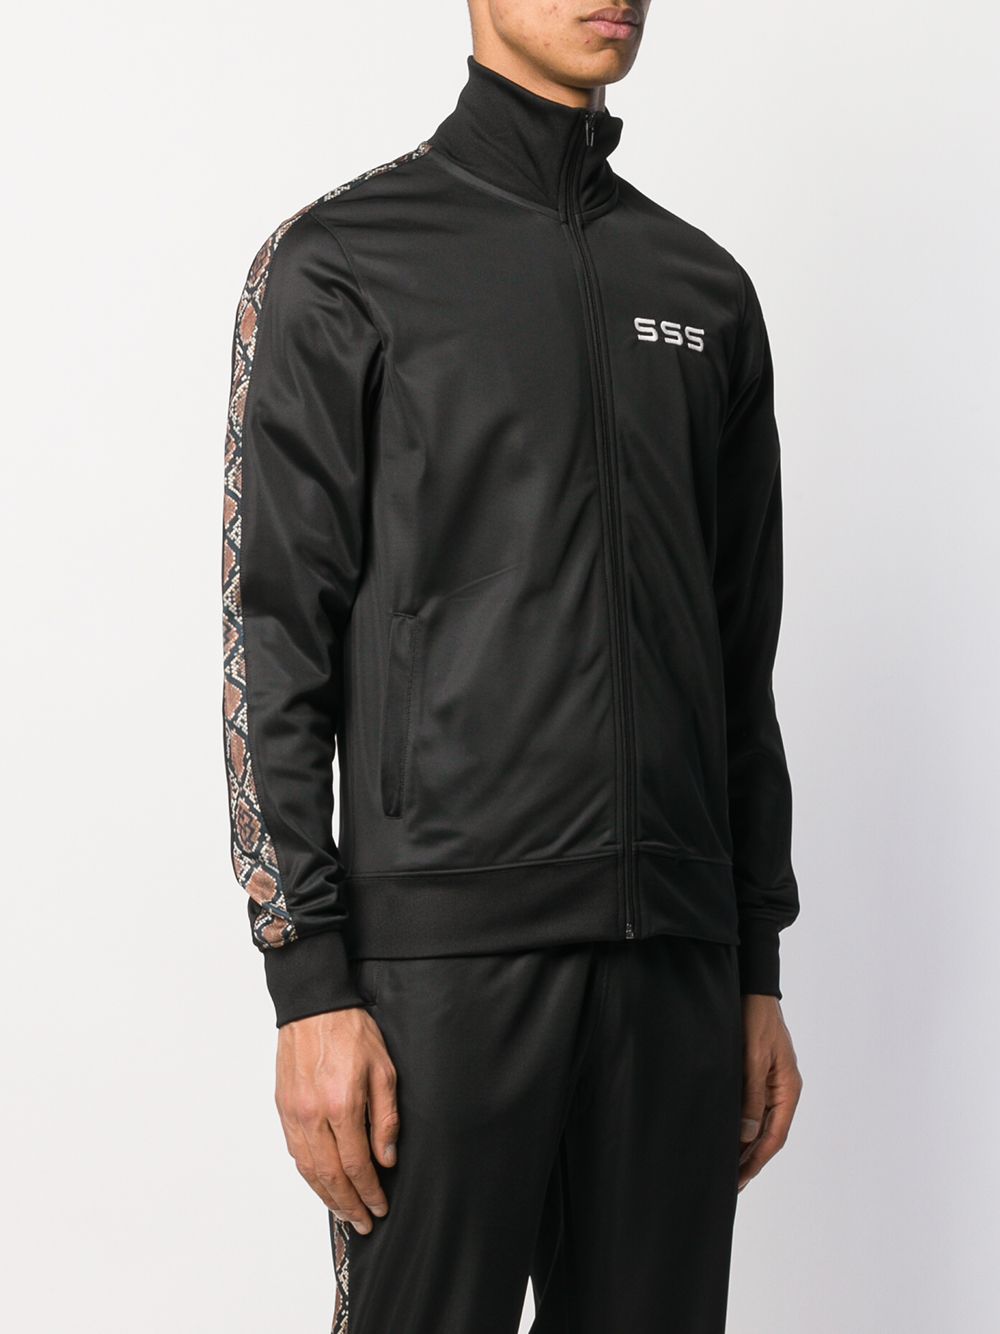 фото Sss world corp спортивная куртка с вышитым логотипом